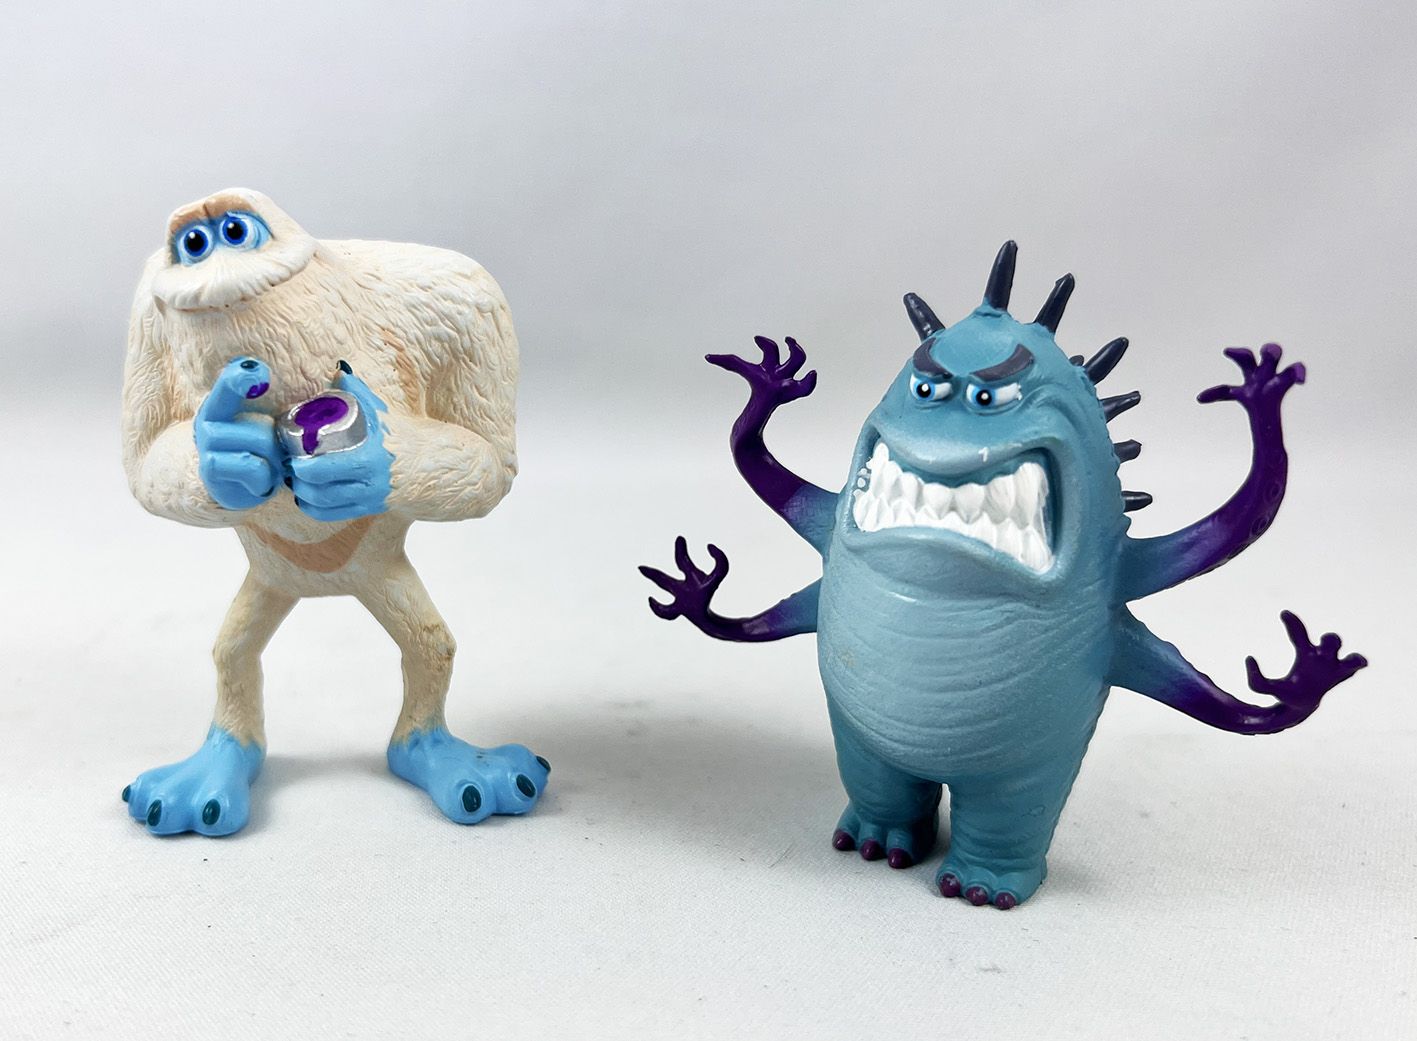 6 pièces/ensemble figurines de monstre jouet Super poupée PVC